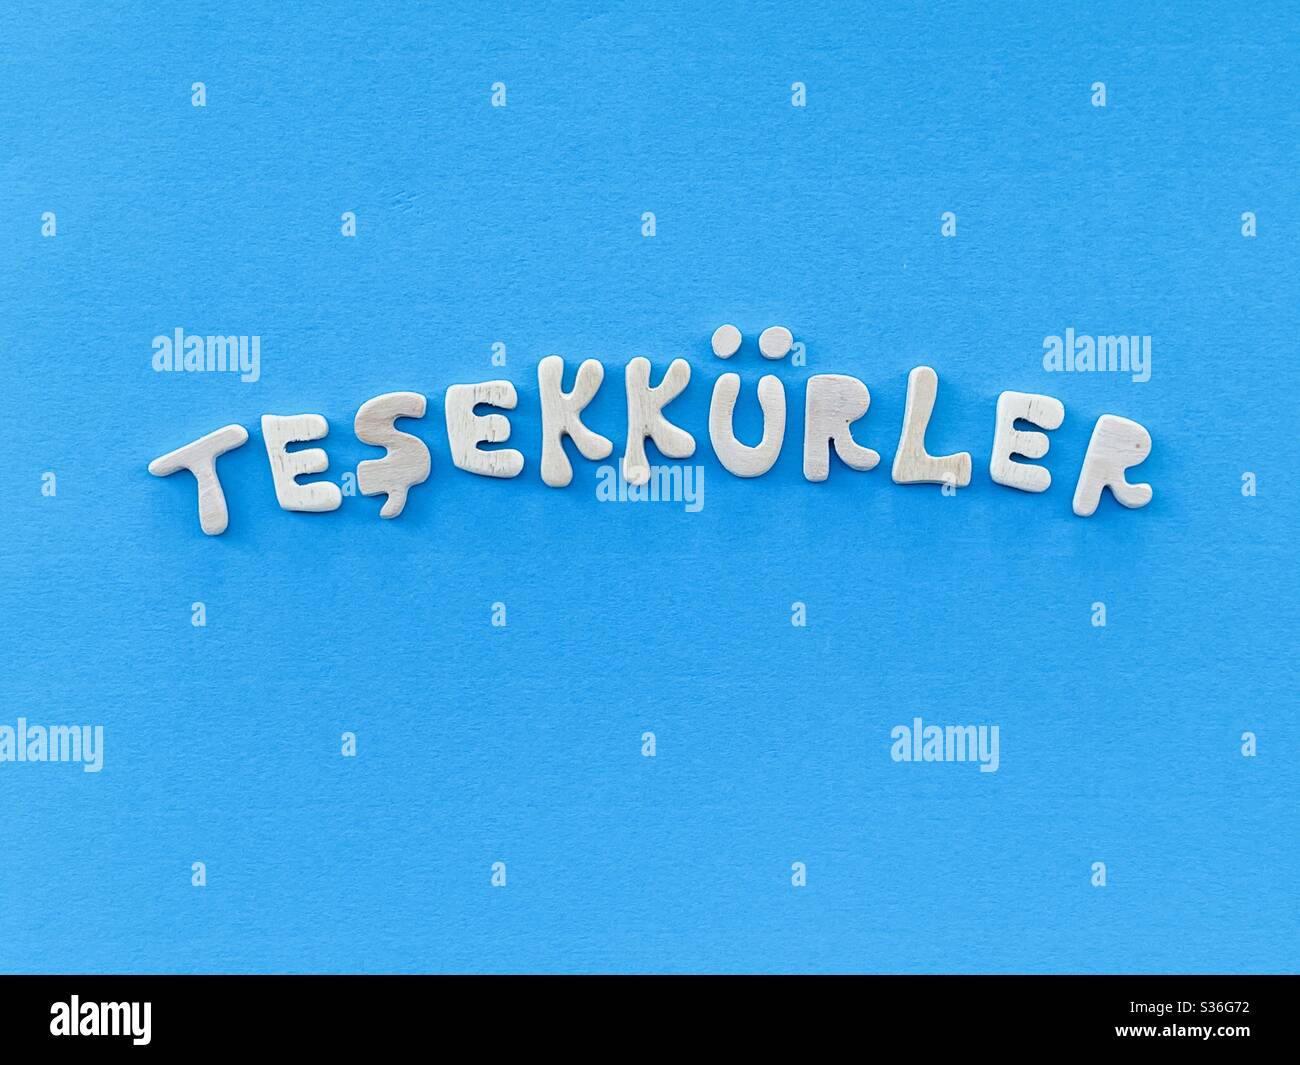 Teşekkürler, merci en langue turque composé de lettres en bois faites à la main sur la couleur bleue Banque D'Images